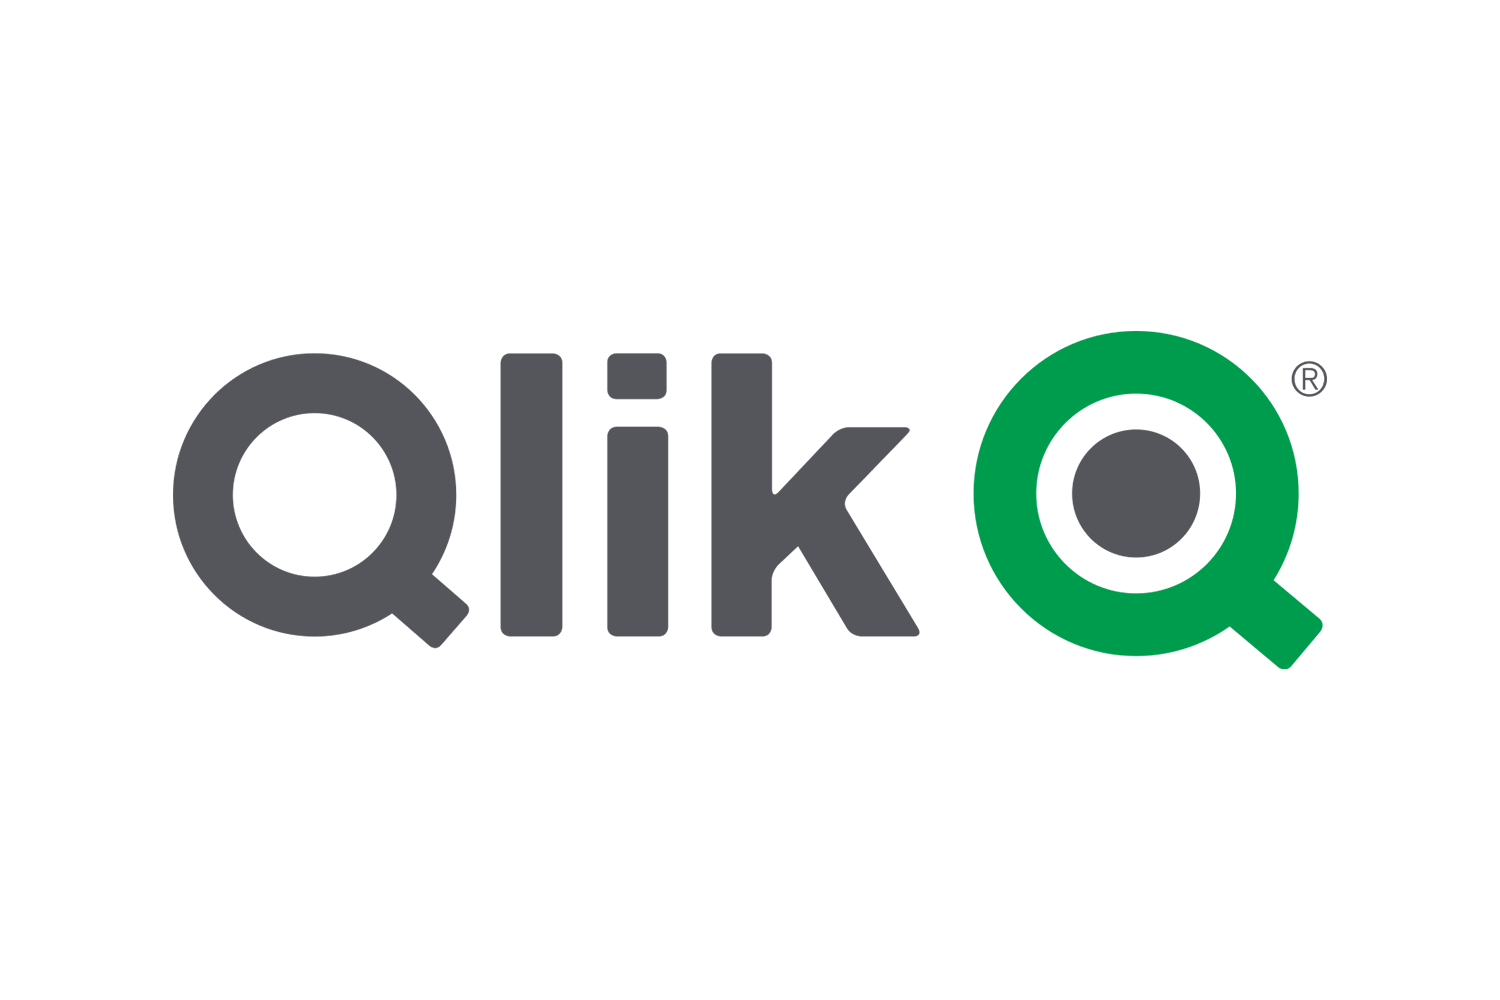 Logo-Qlik